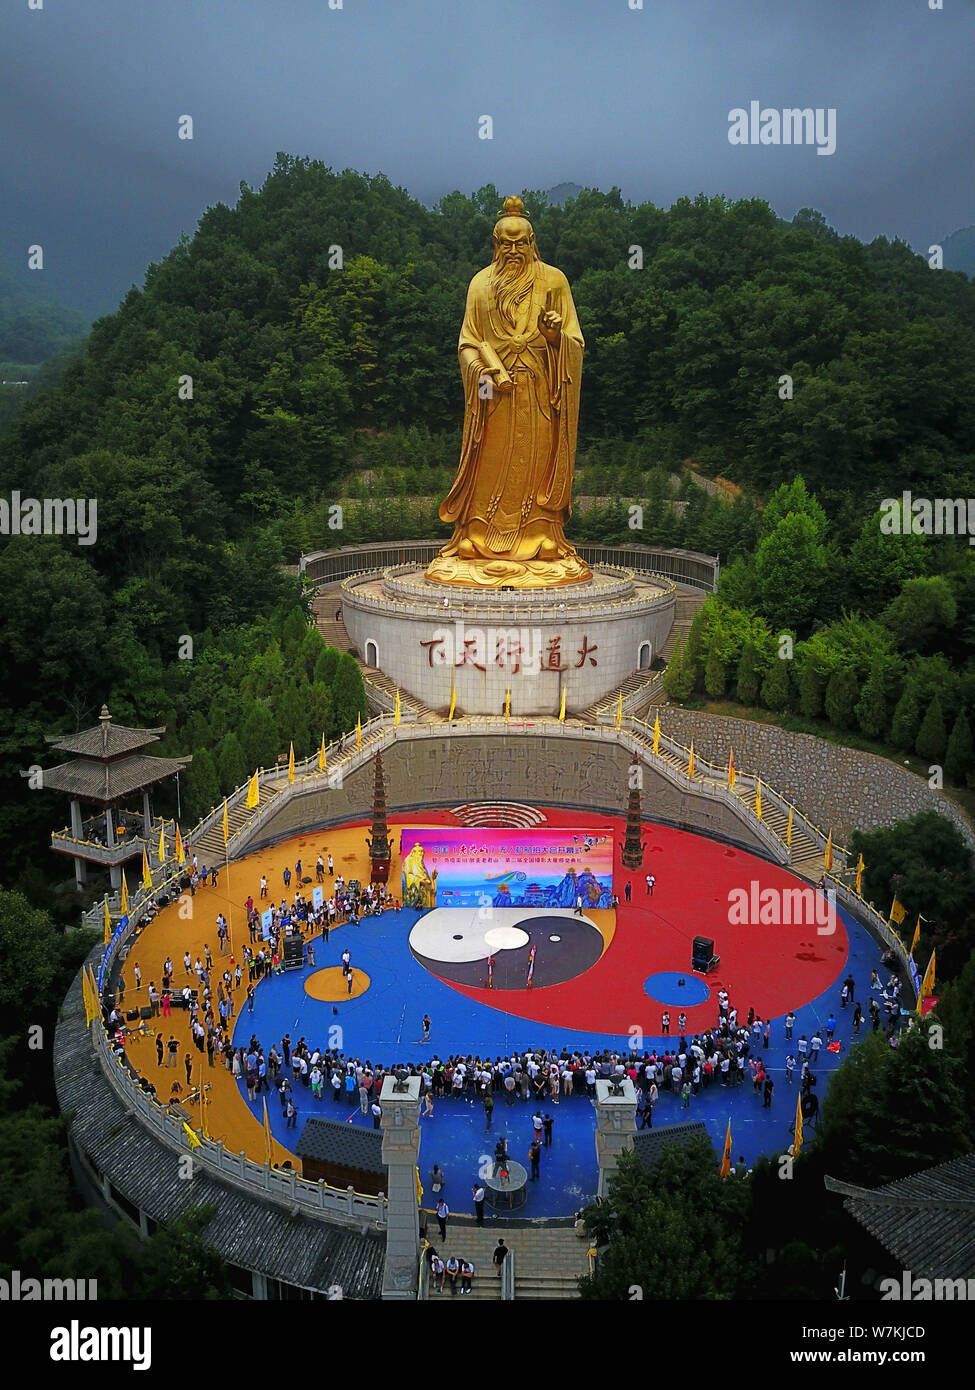 Blick auf die Statue von Lao-Tzu, auch genannt Laotse oder Lao-Tze, eine alte chinesische Philosoph und Begründer des Taoismus, am Berg in Luanc Laojun Stockfoto